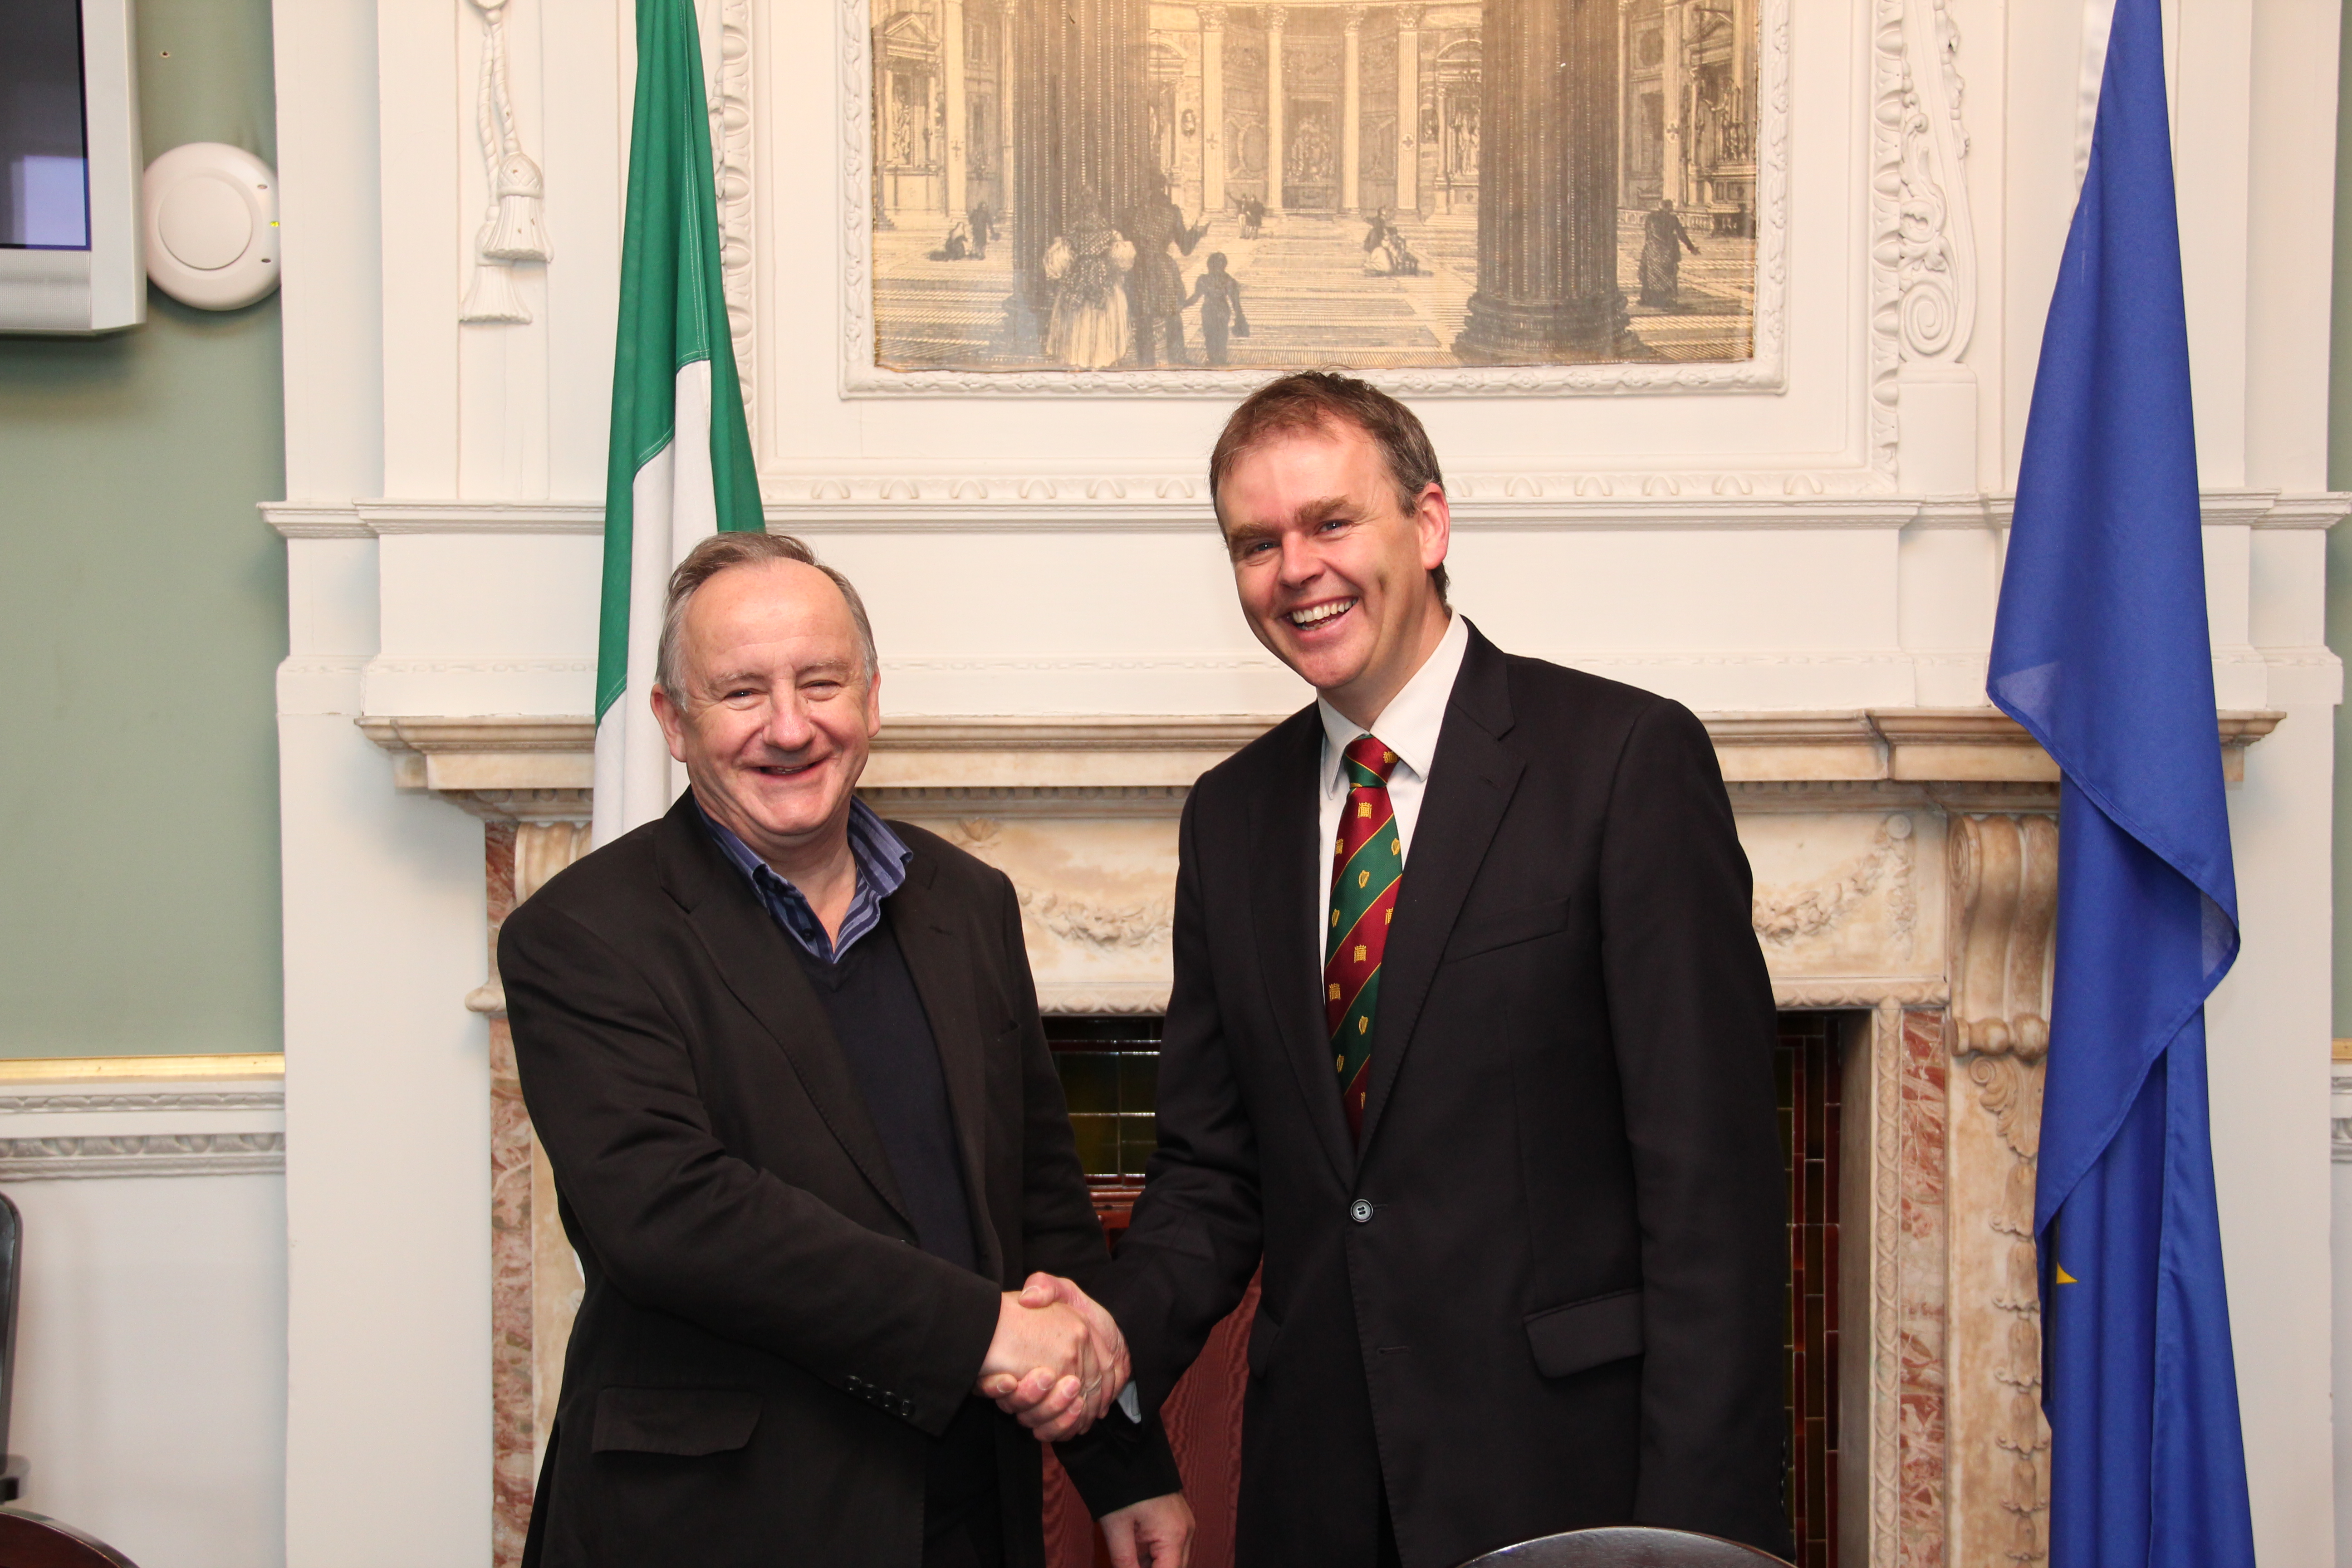 Co-Chairmen meet in Dublin